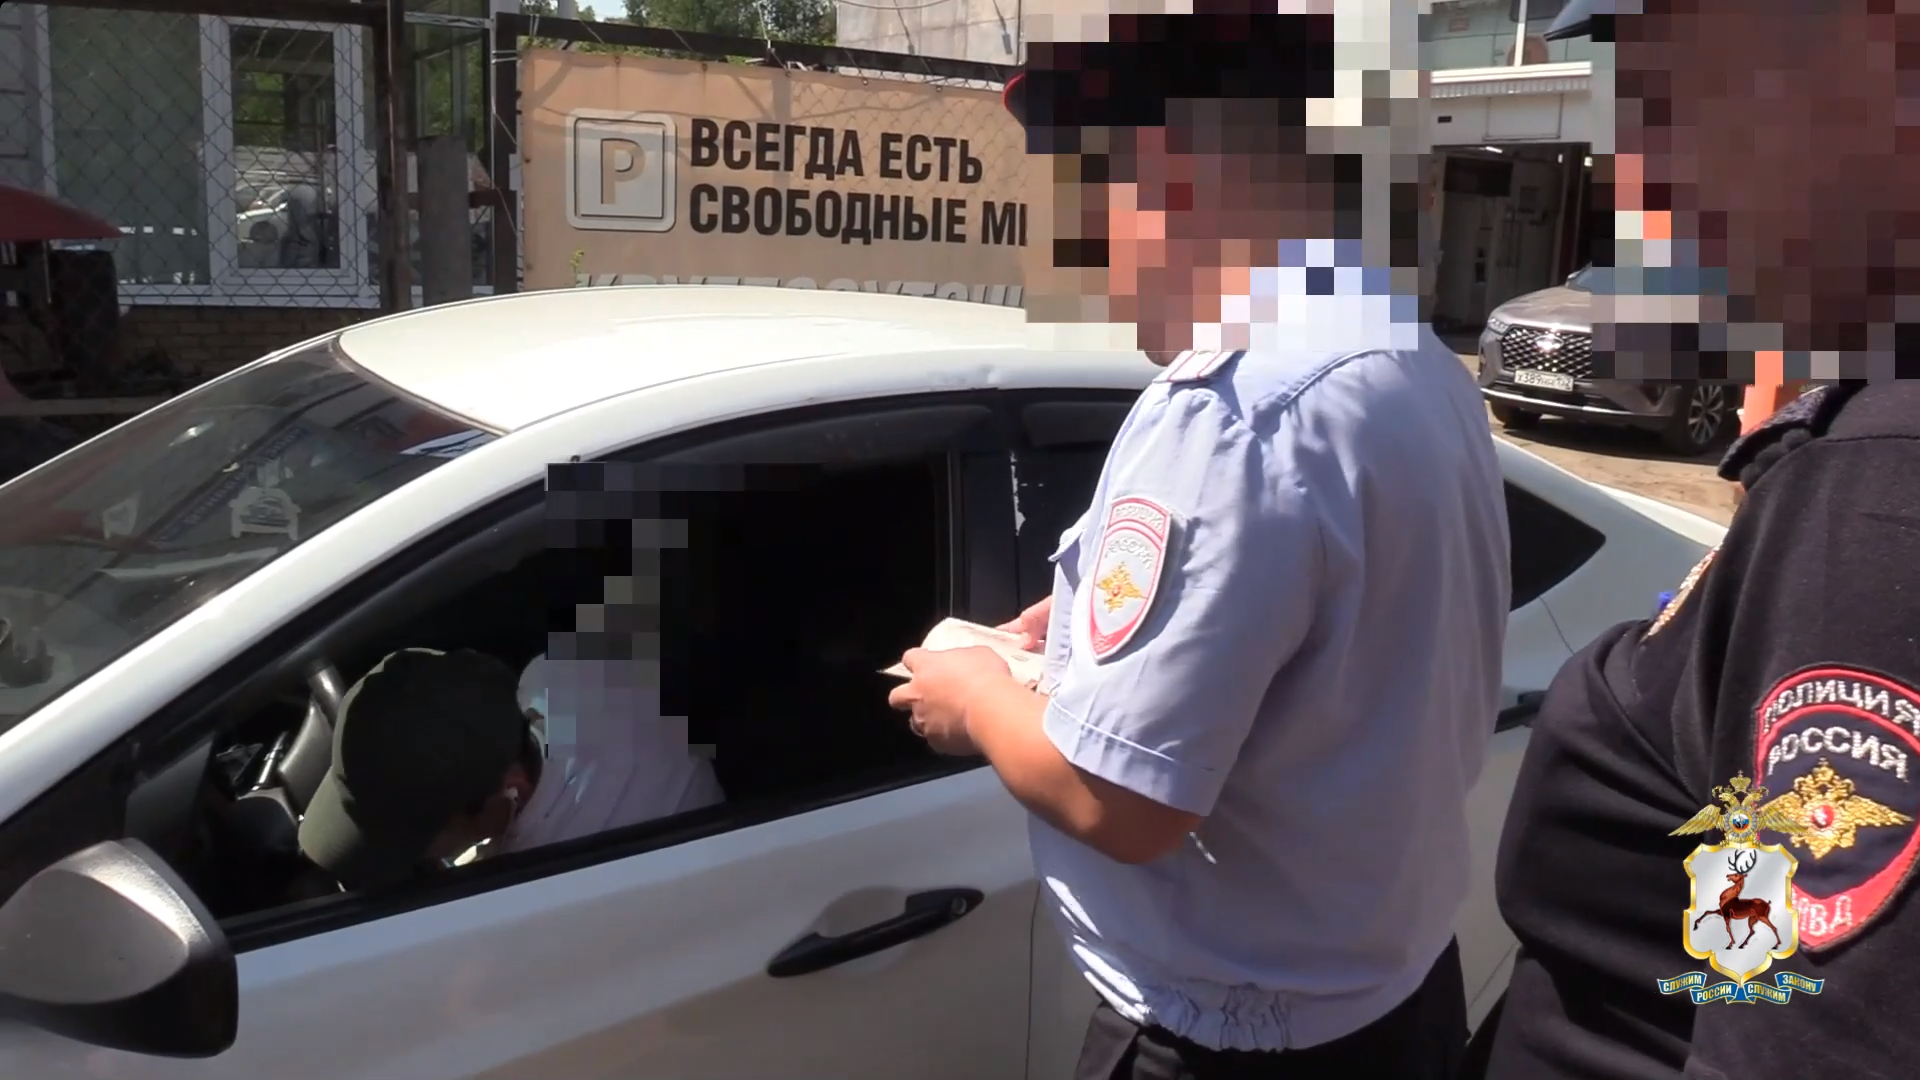 Нижегородские полицейские пресекли незаконную деятельность иностранного таксиста